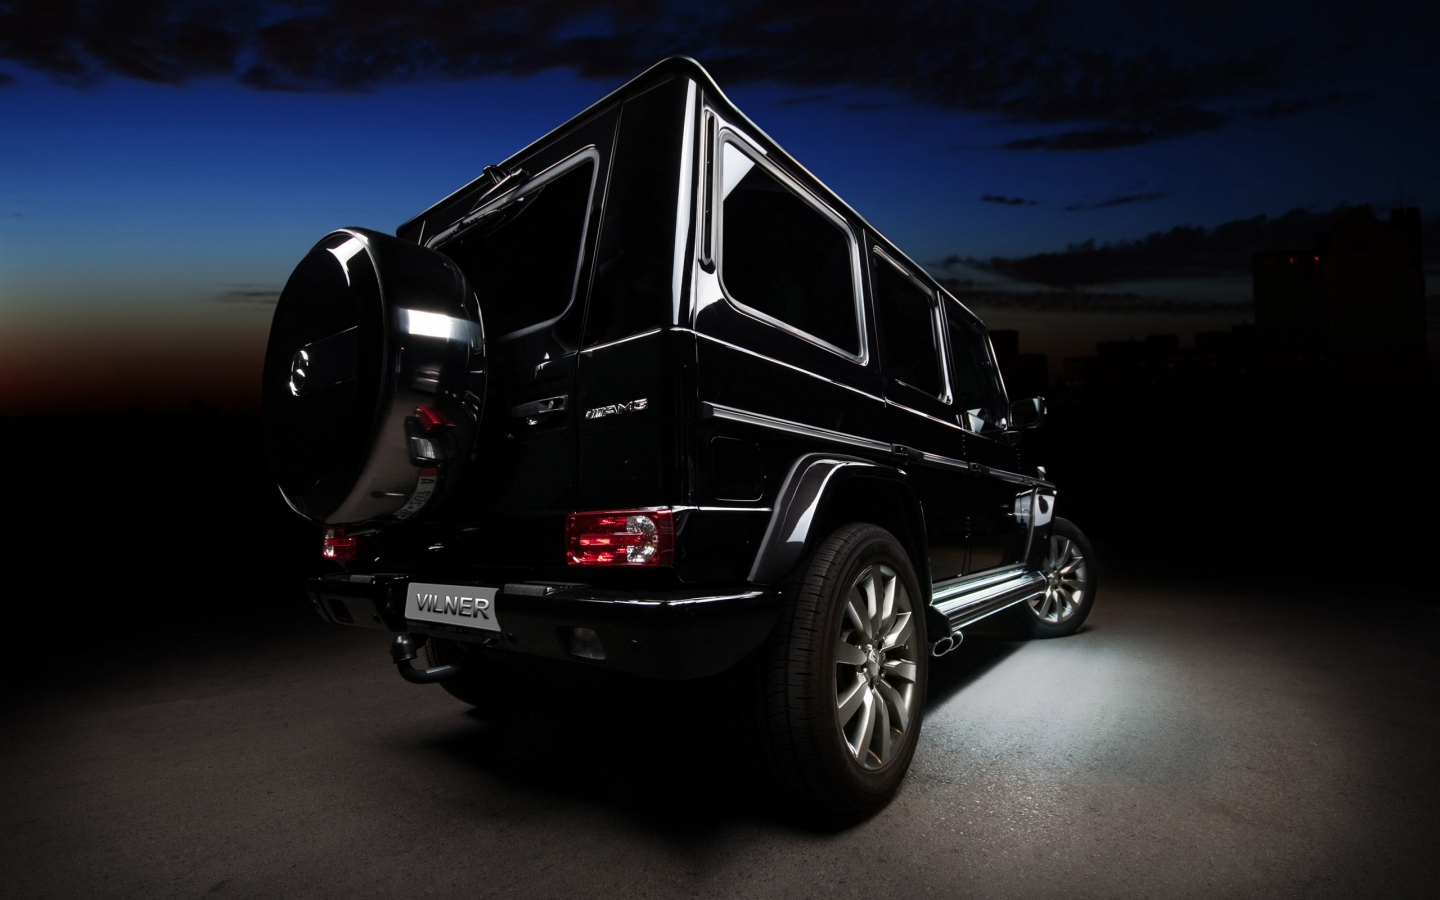 Mercedes Benz G Class Vilner Rear for 1440 x 900 widescreen resolution